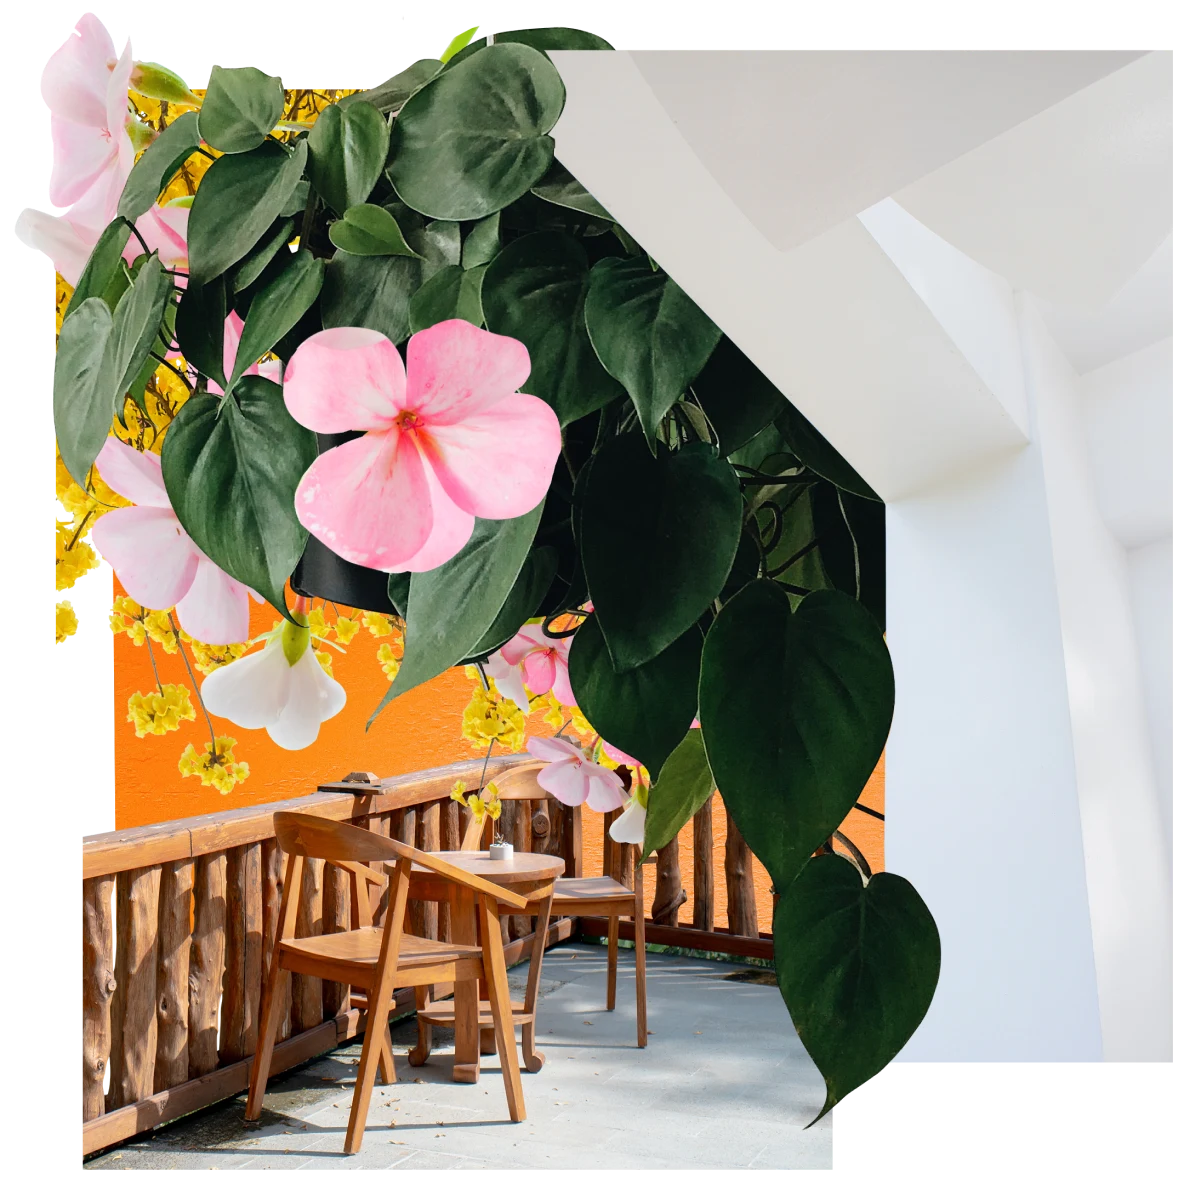 Collage d'éléments verts, marron, jaunes et blancs. Au centre, feuilles vertes et fleurs roses et jaunes tombant du plafond. À droite, dessous d'un escalier blanc. Au premier plan, deux fauteuils et une table en bois sur une terrasse.